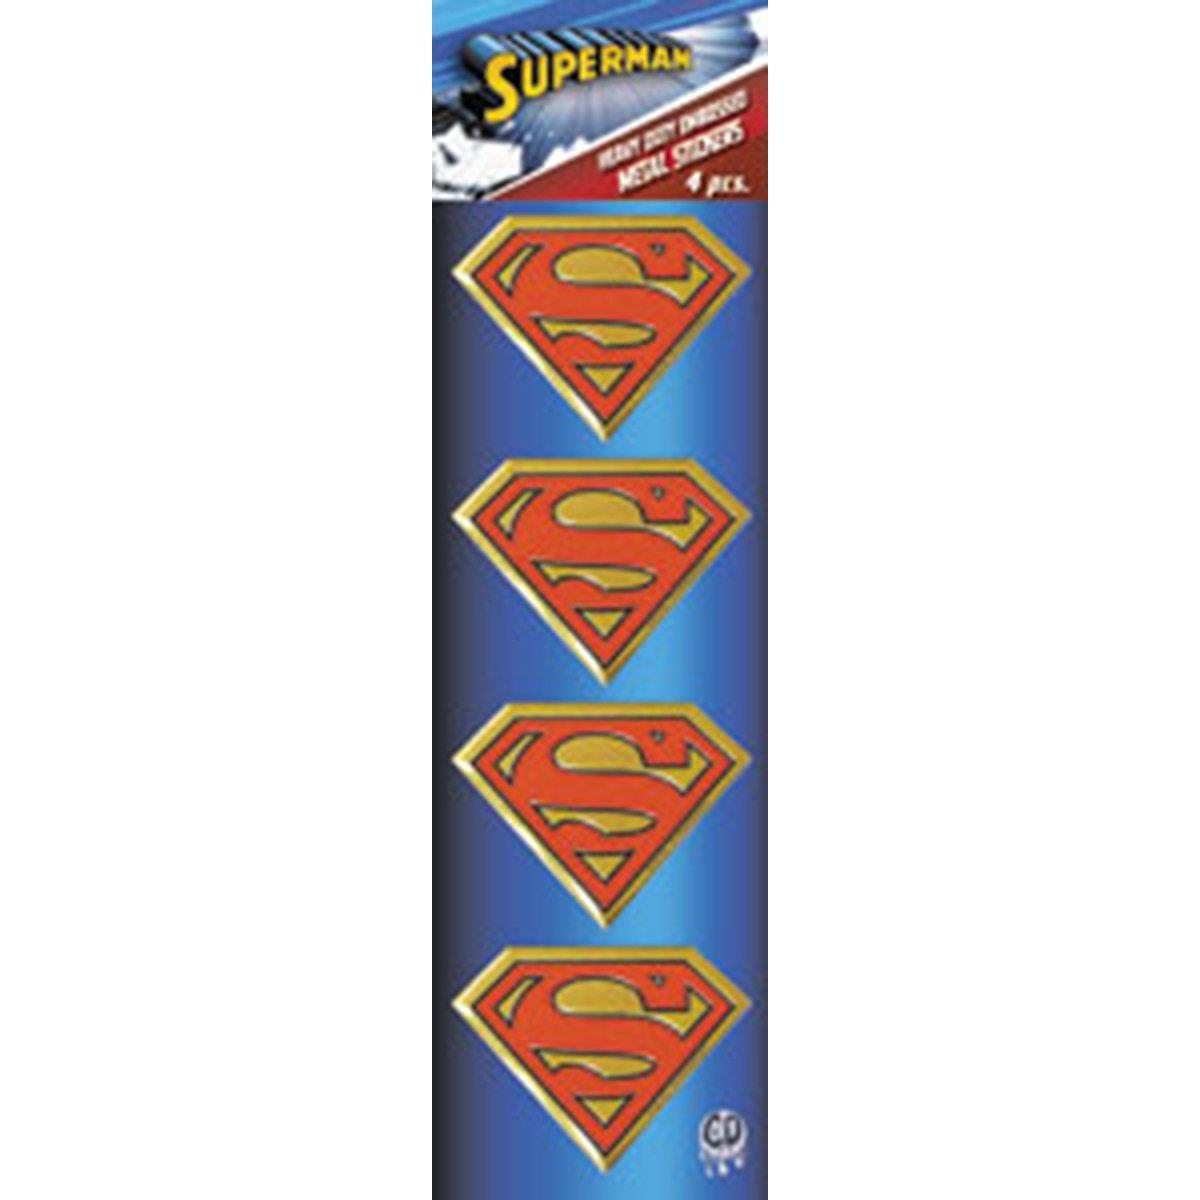 C&D Visionary DC Comics Superman Logo 4 Piece Gold Mini Metal Set Sticker (S-DC-0146-M-S), Multi Color, 2 Inch